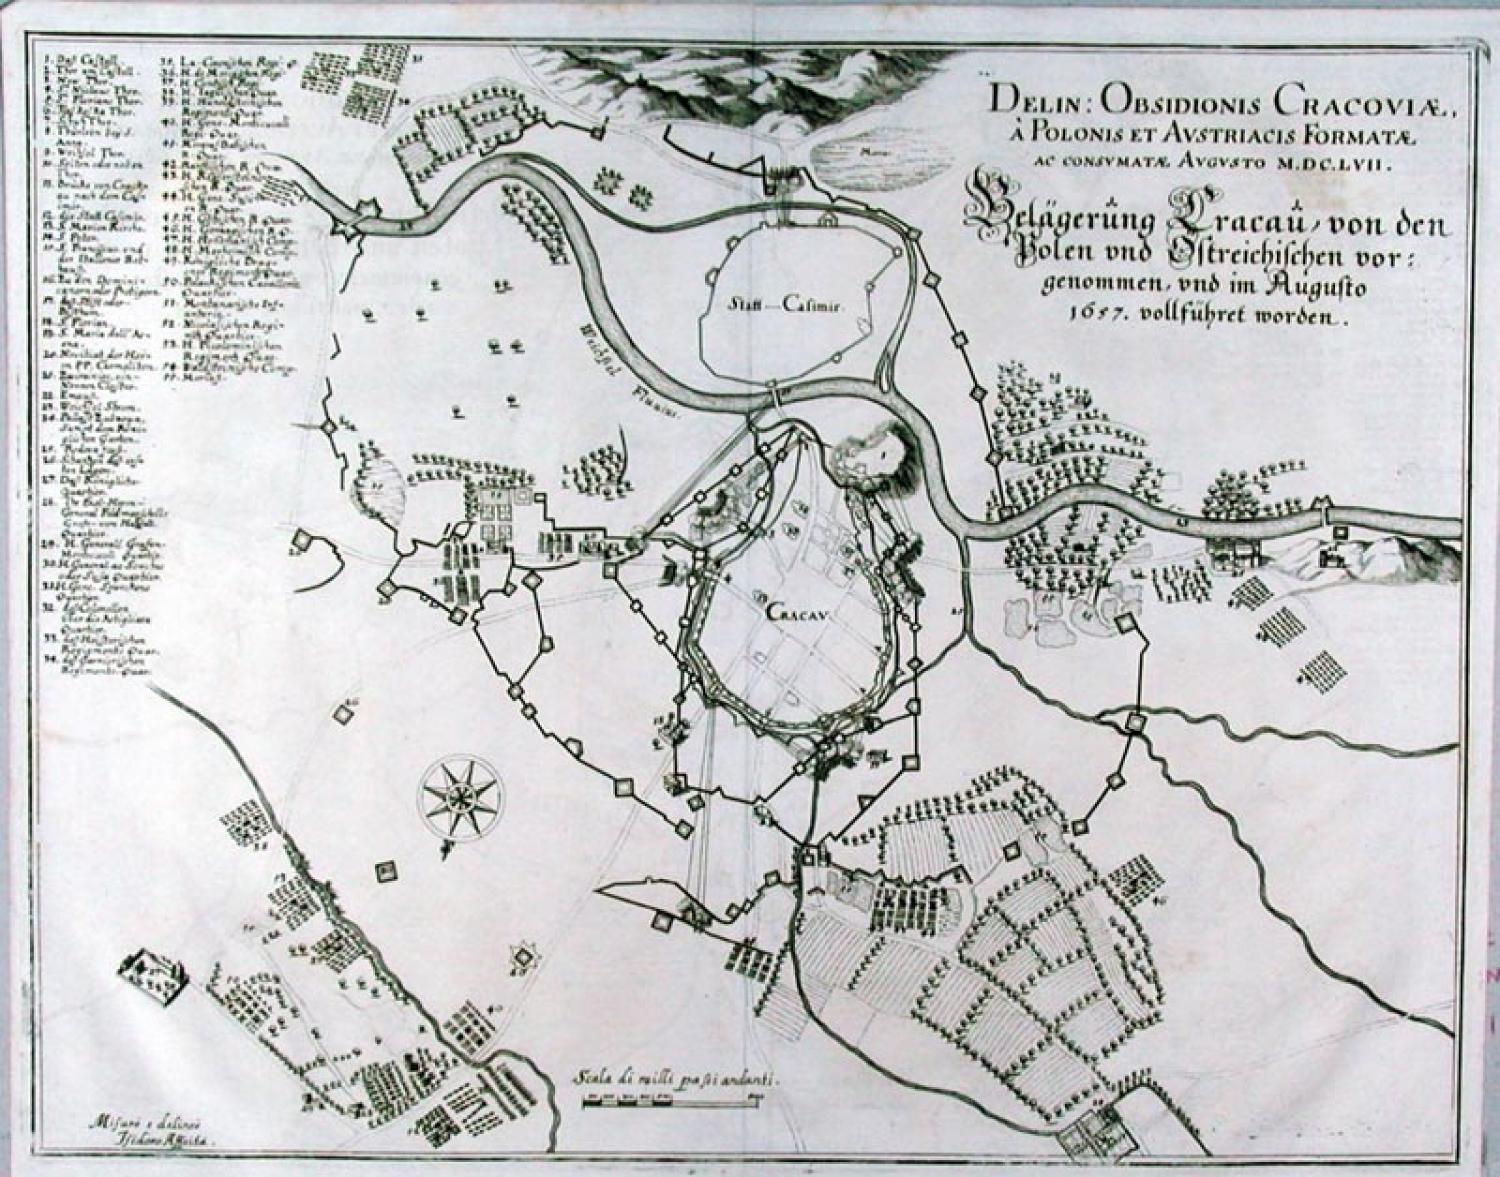 SOLD Belagerung Cracau von den Polen und Ostreichischen … 1657